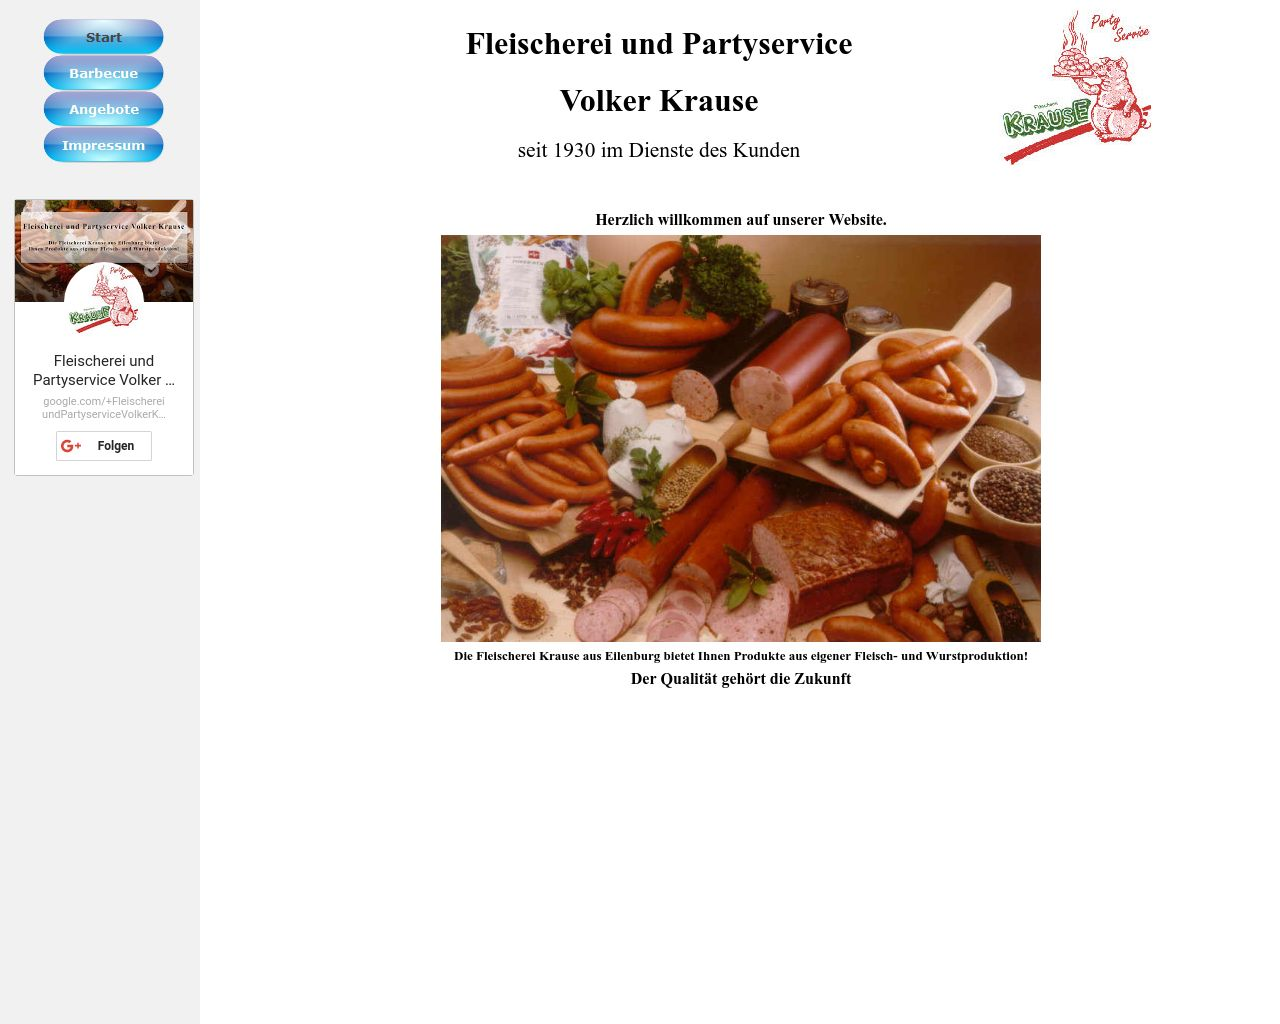 Bild Website fleischerei-krause.de in 1280x1024